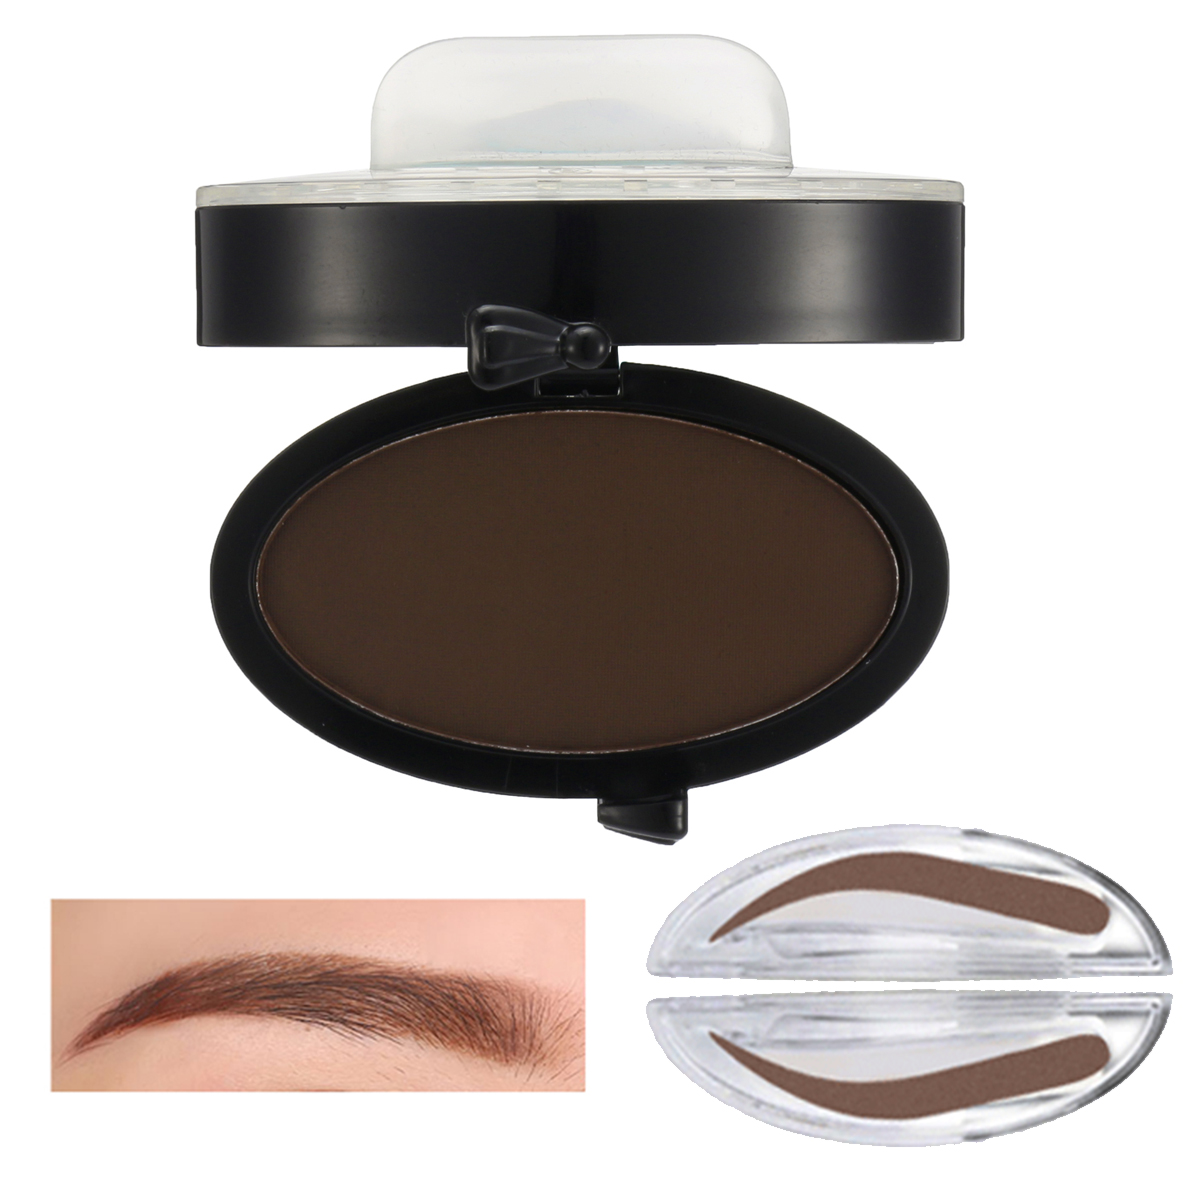 Brow Stamp Powder Grey Brown Makeup Eyebrow Gel Seal Waterproof Eyes Cosmetic Black Head Brush Tools